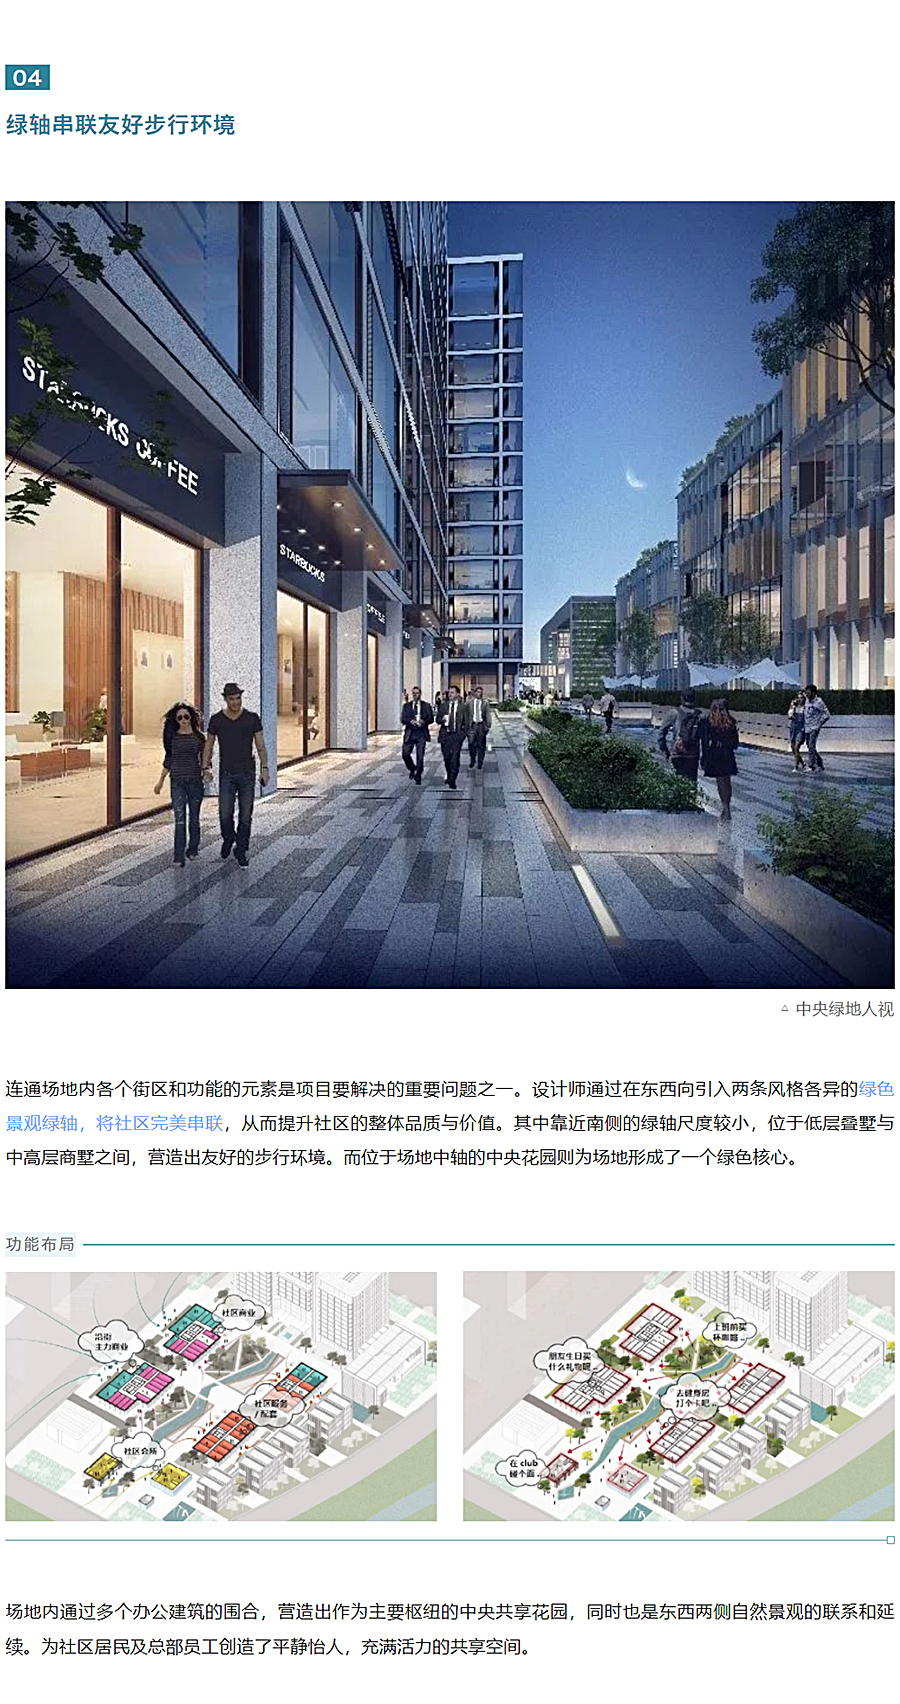 中建壹品澜荟-_-与环境共生的新型总部办公综合体_0005_图层-6.jpg